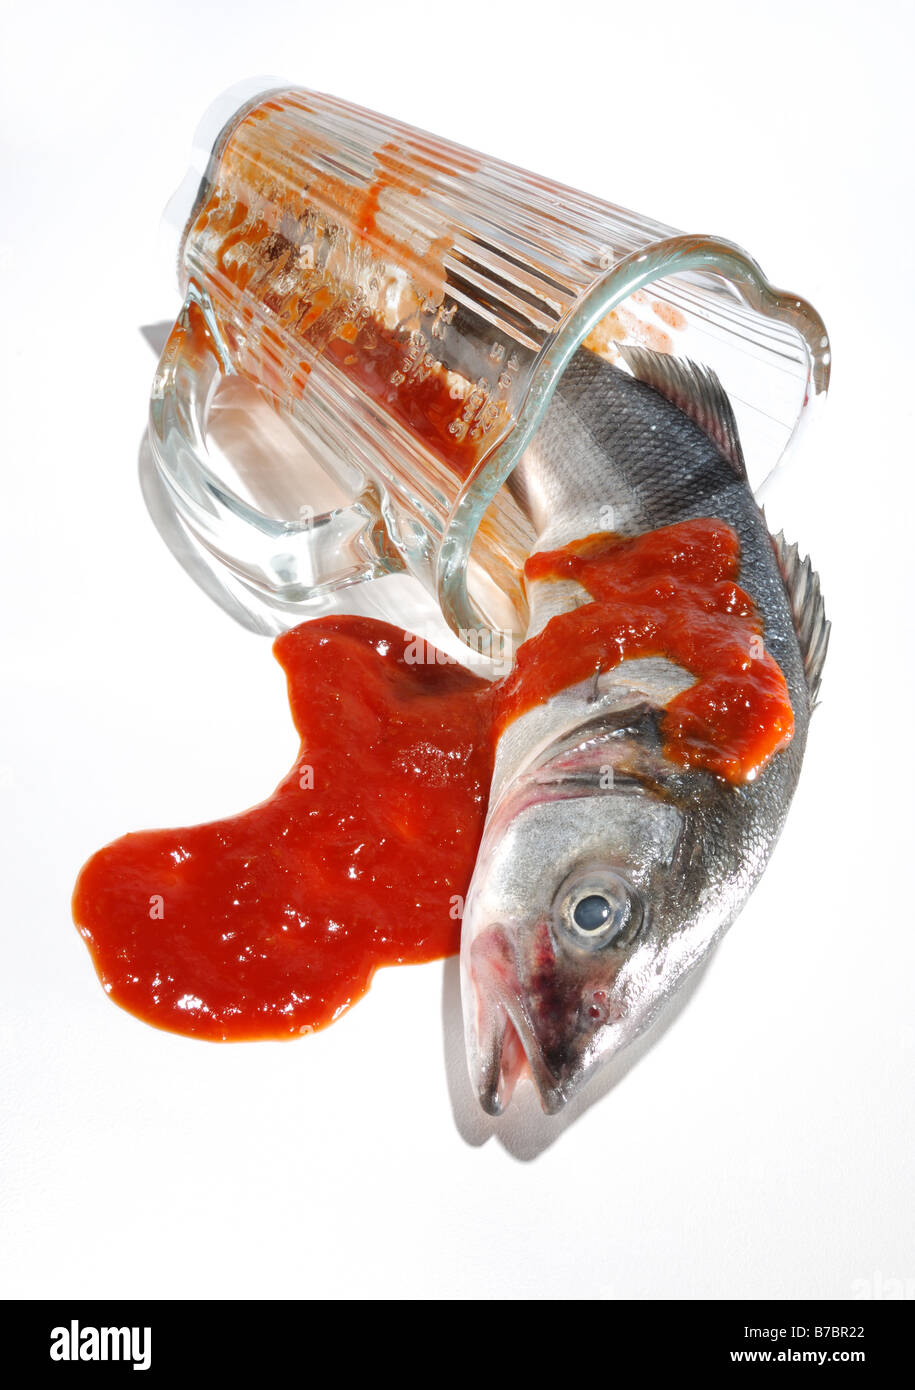 Un petit poisson entier recouvert de sauce rouge à l'intérieur d'un mélangeur en verre Banque D'Images